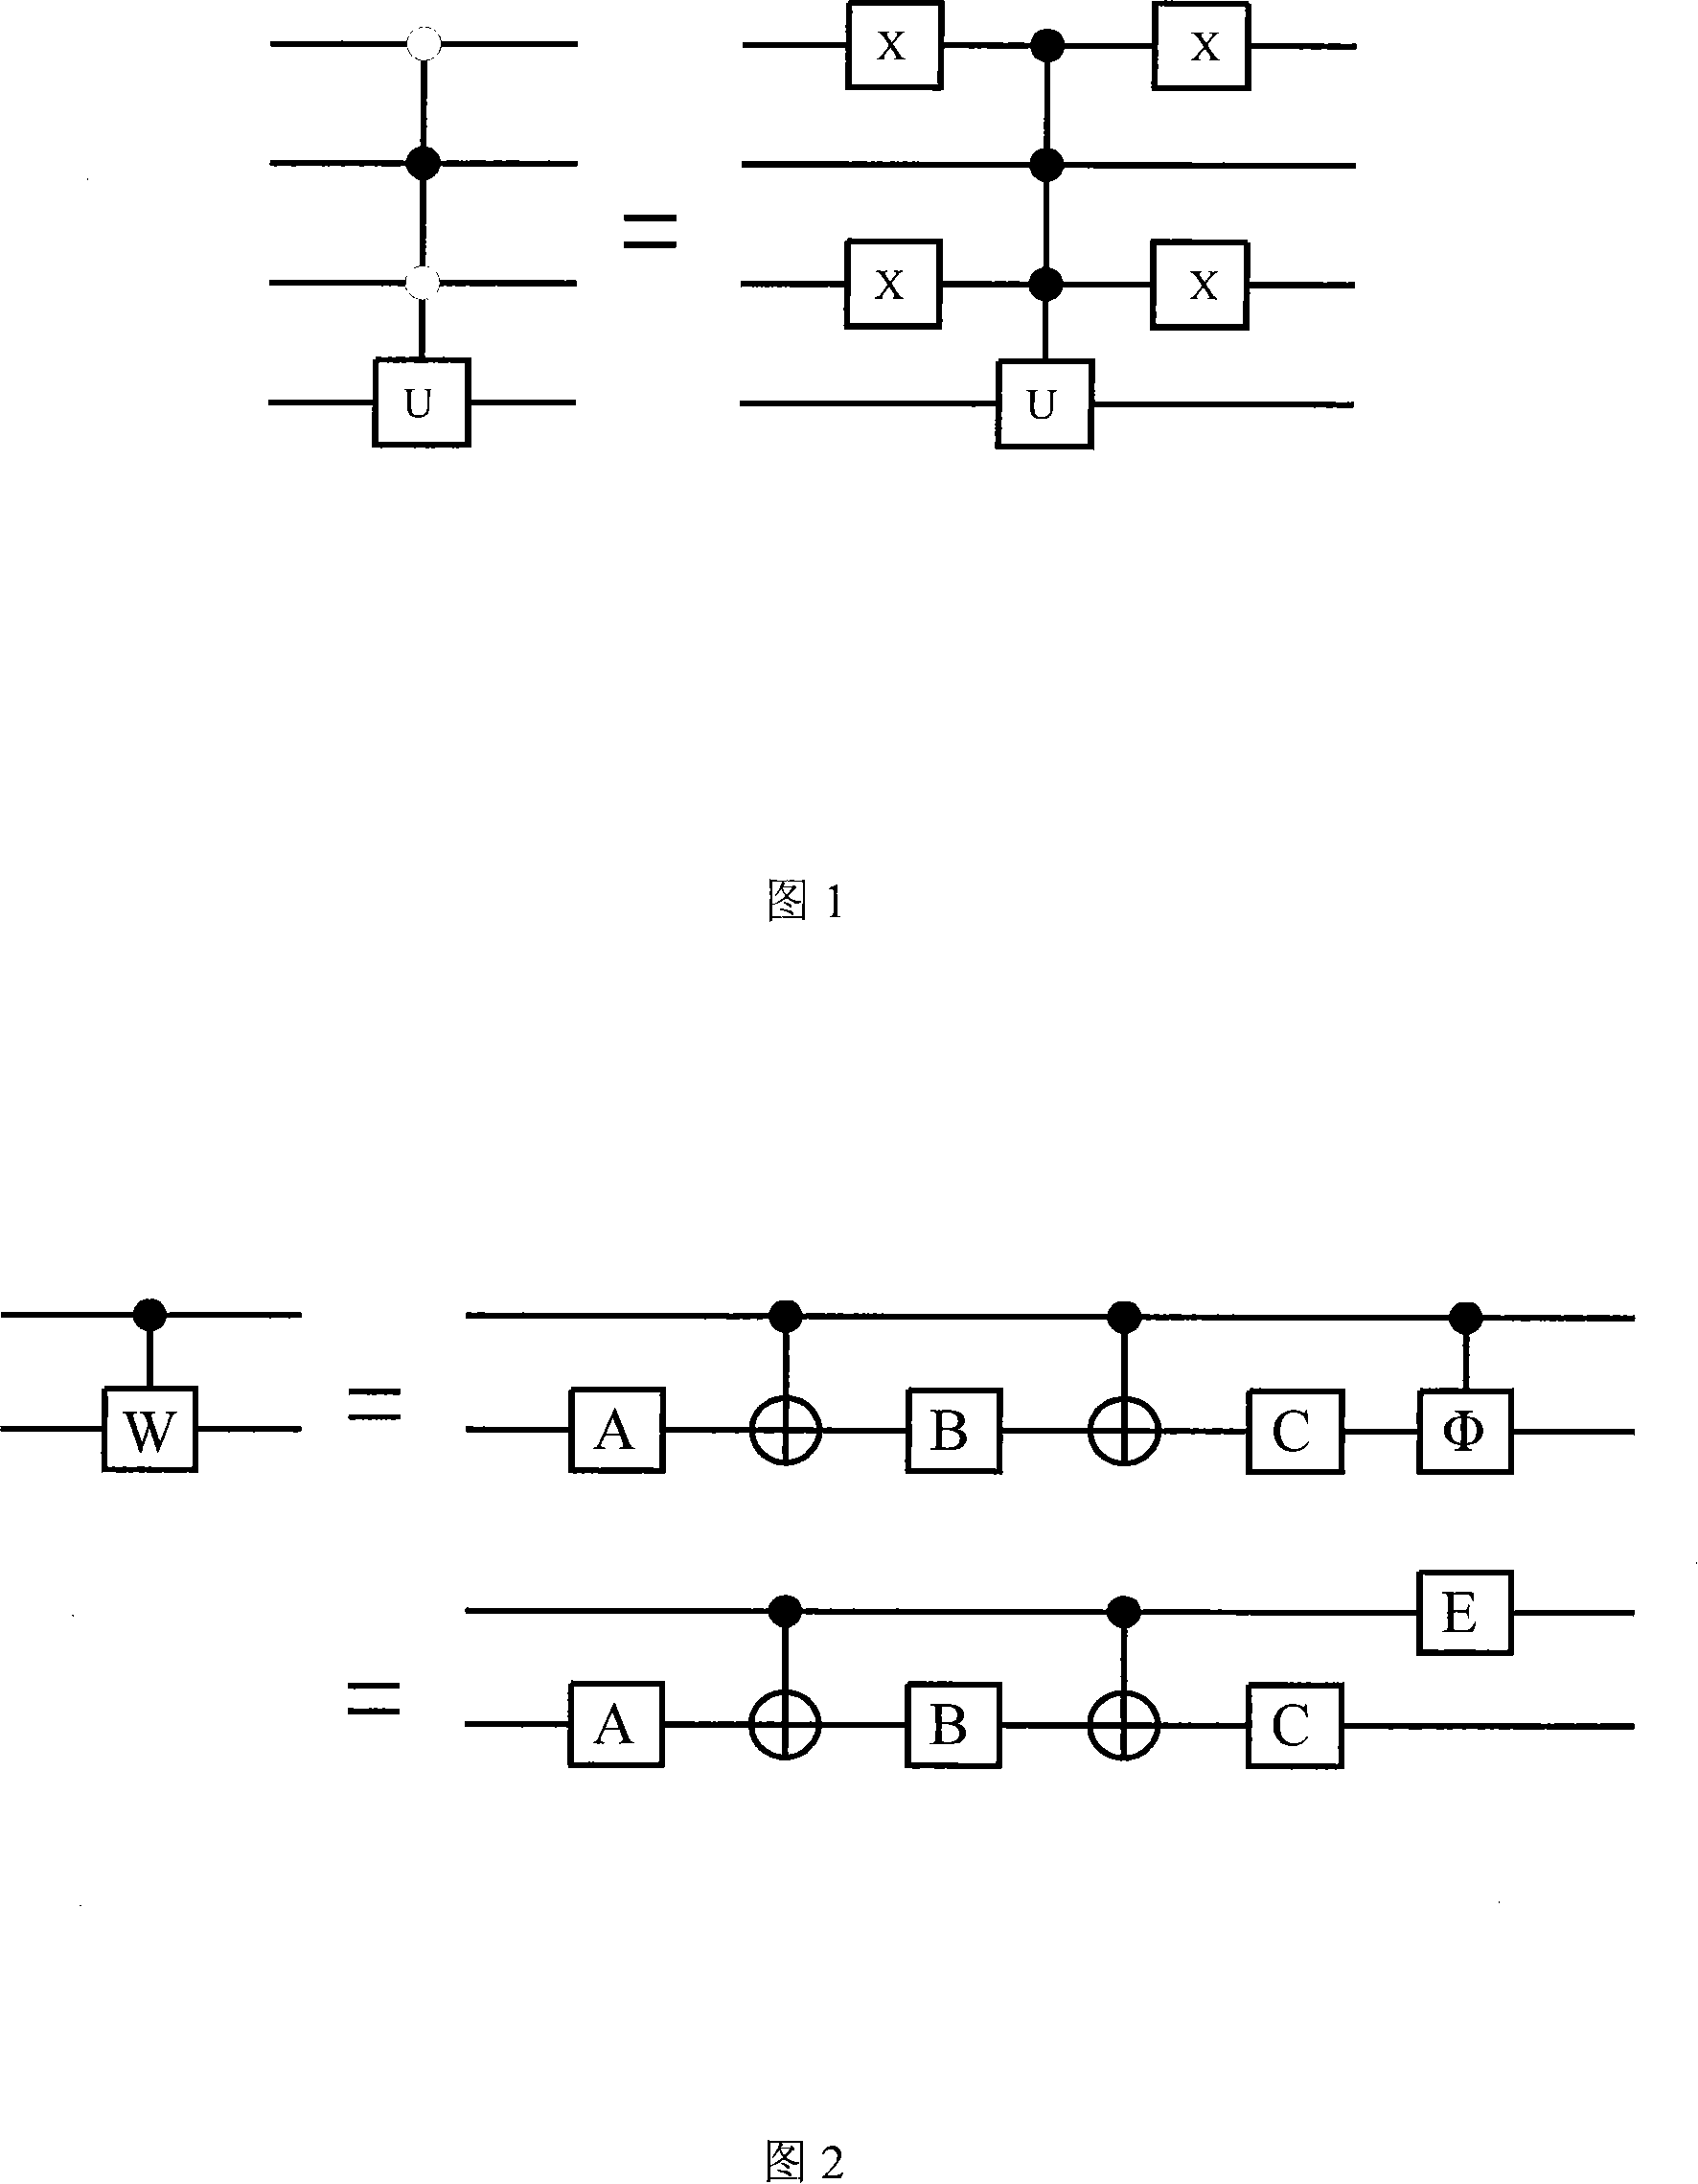 Decompose method for arbitrarily quantum bit gate